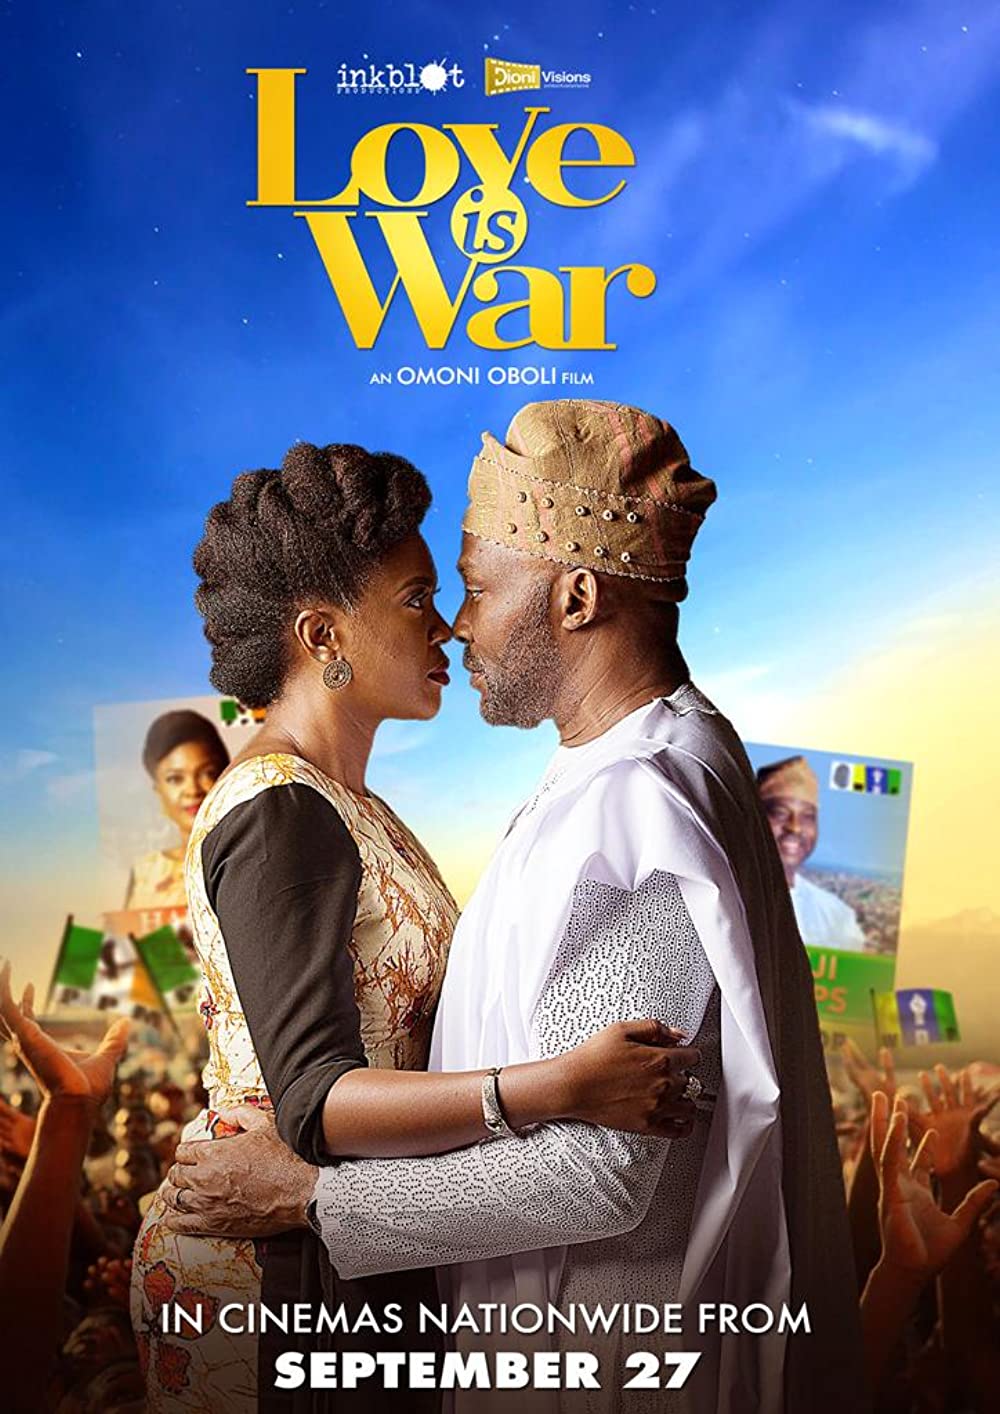 Love is war 2019 movie poster